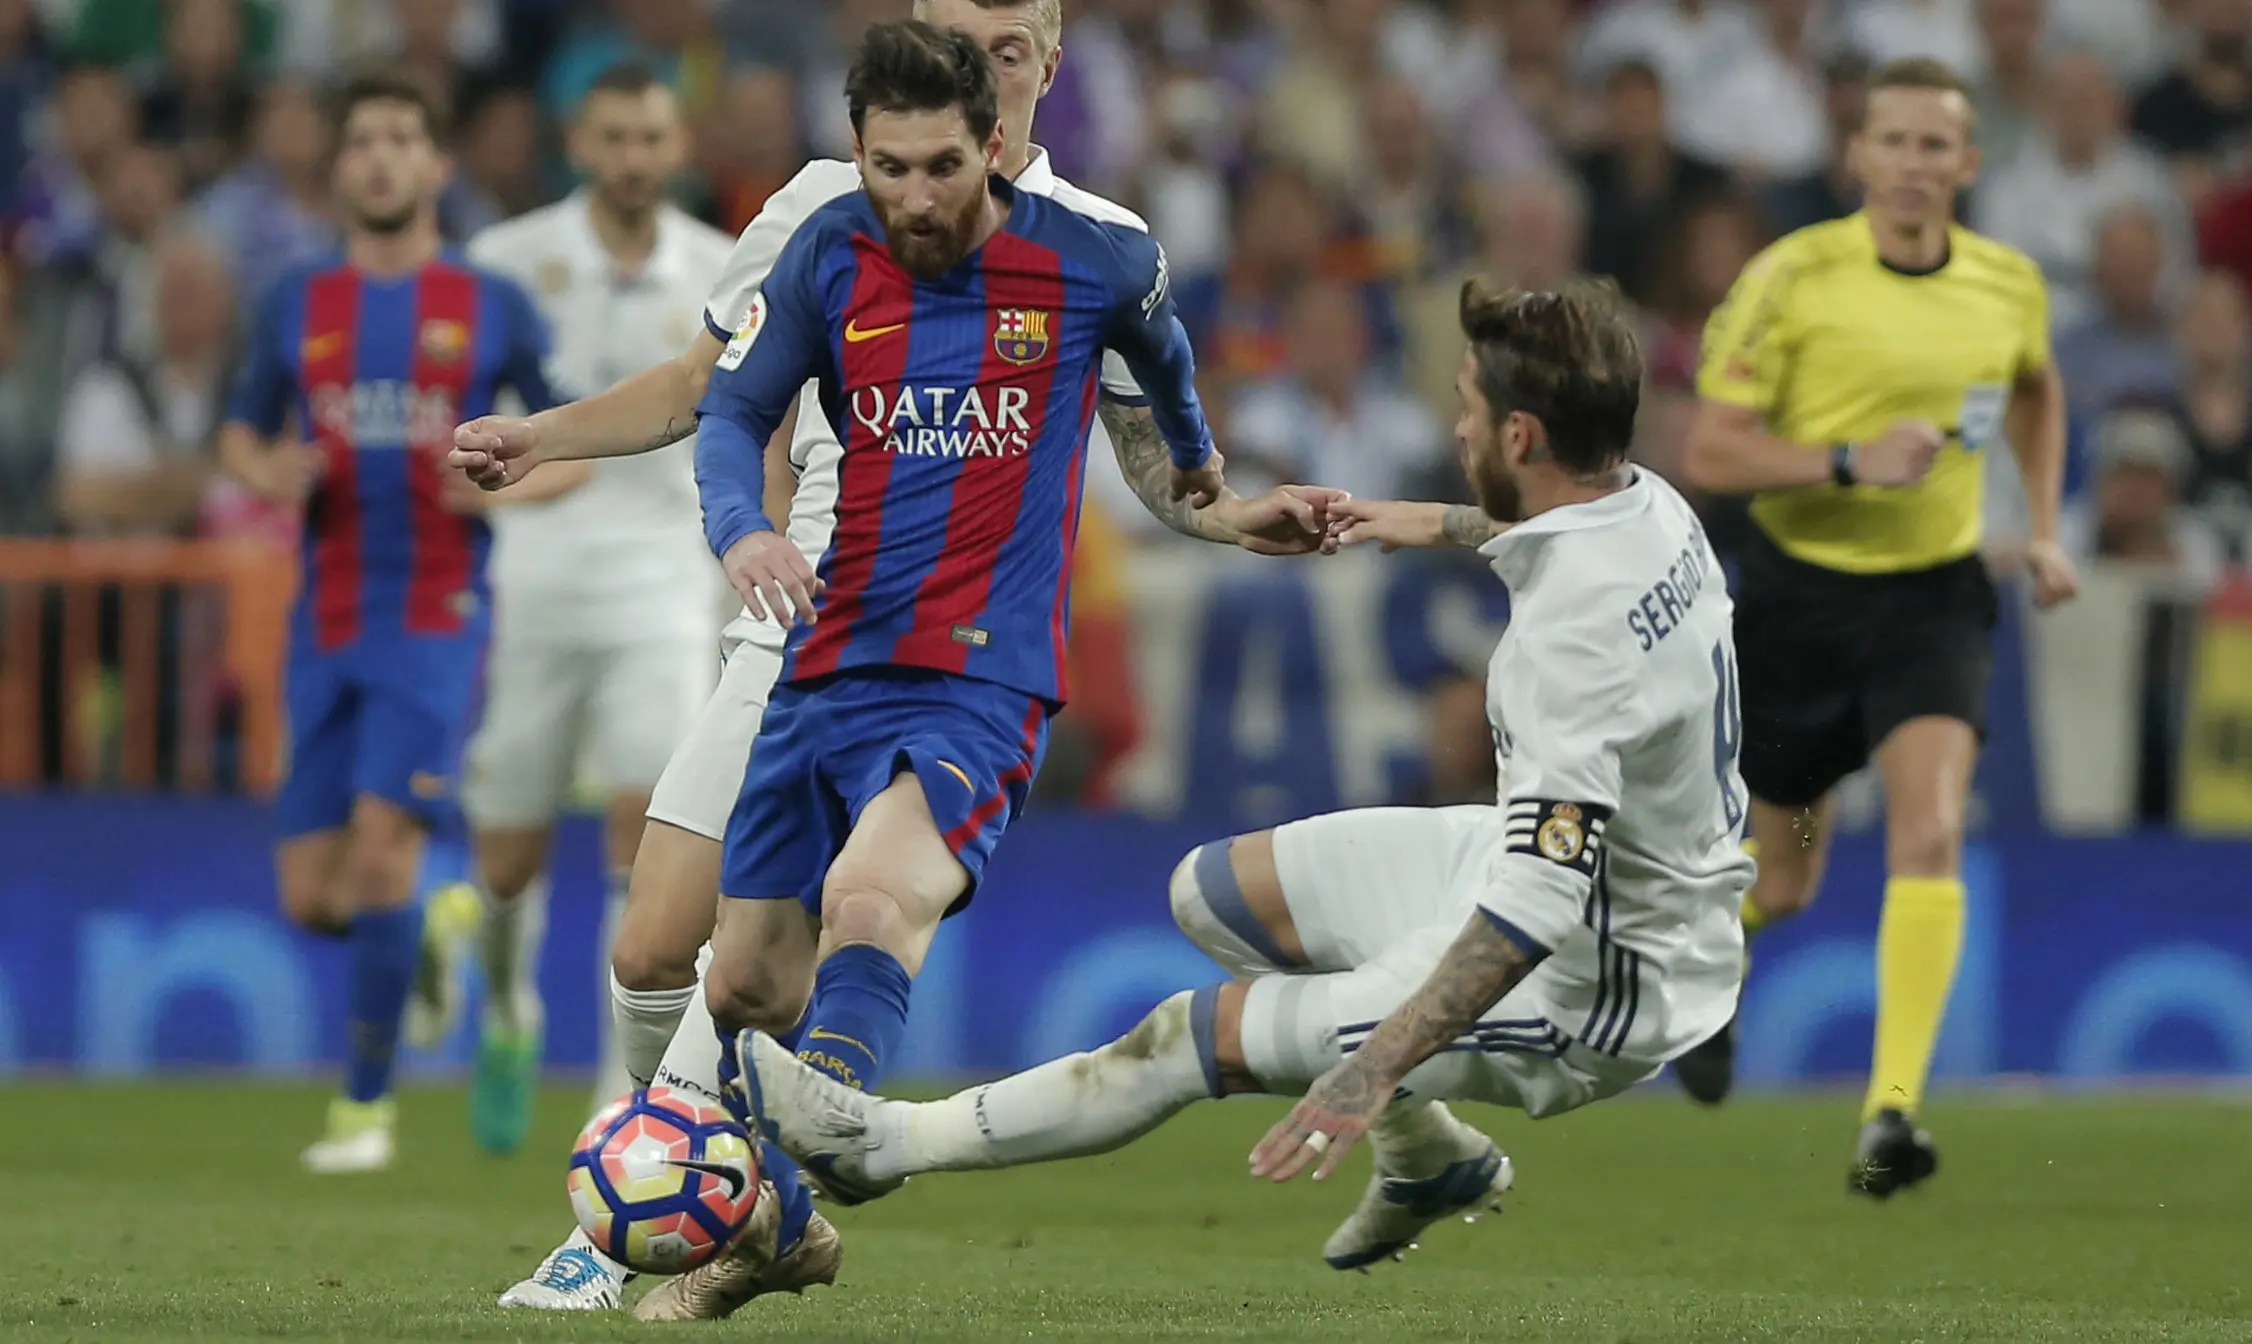 Bek Real Madrid, Sergio Ramos, menerjang striker Barcelona Lionel Messi, pada el clasico di di Estadio Santiago Bernabeu, Senin (24/4/2017), sehingga menerima kartu merah. (AP Photo/Daniel Ochoa de Olza)